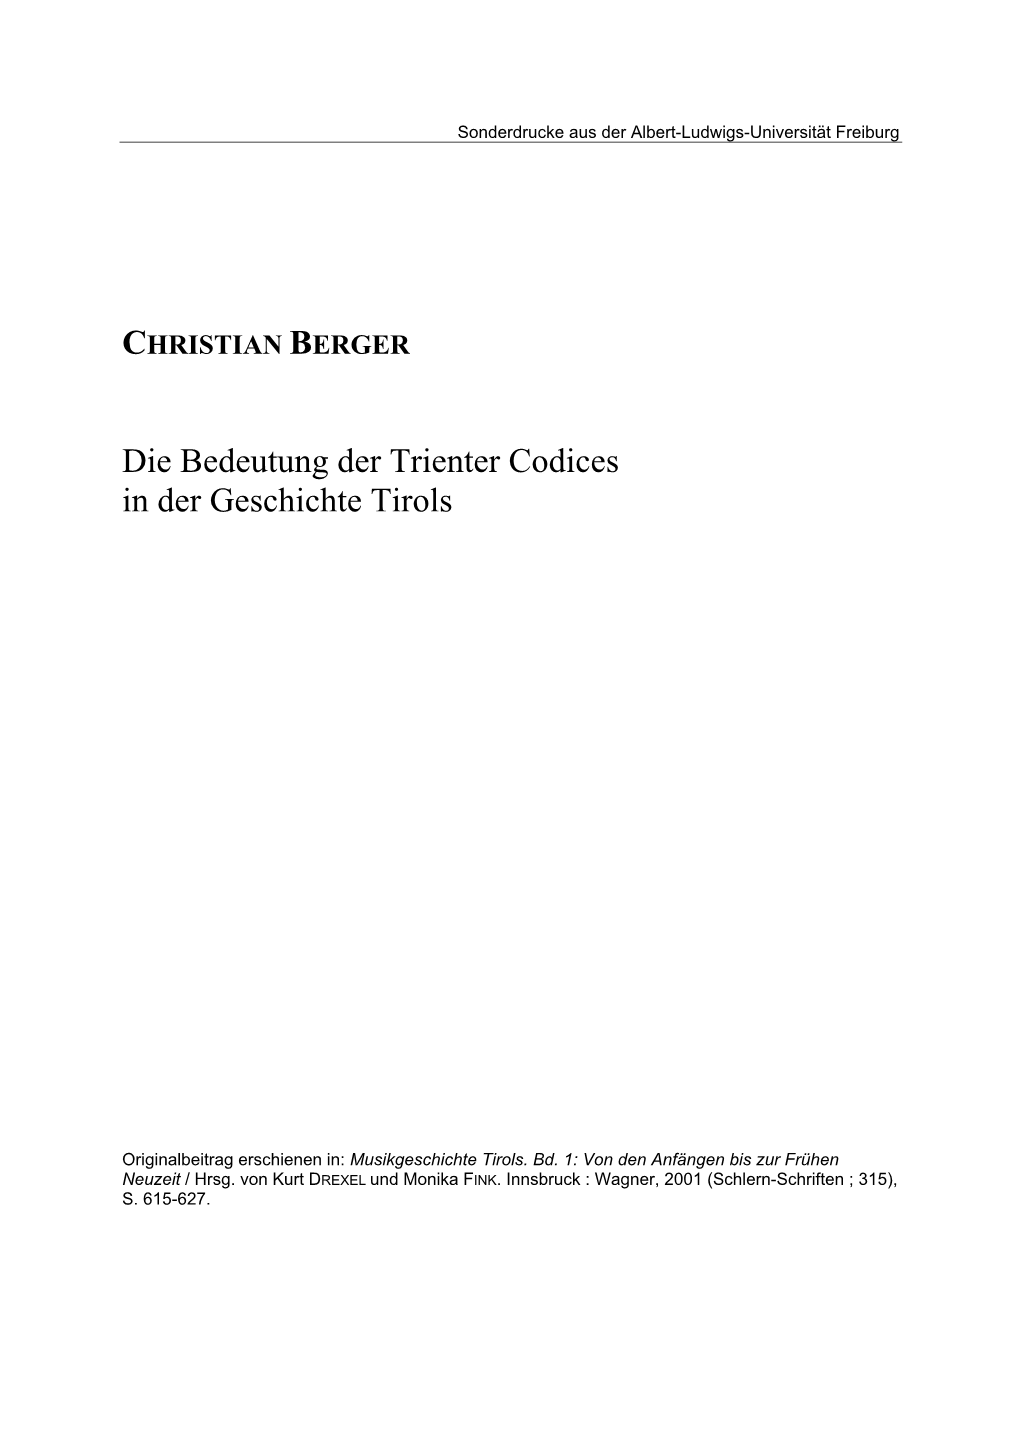 Die Bedeutung Der Trienter Codices in Der Geschichte Tirols